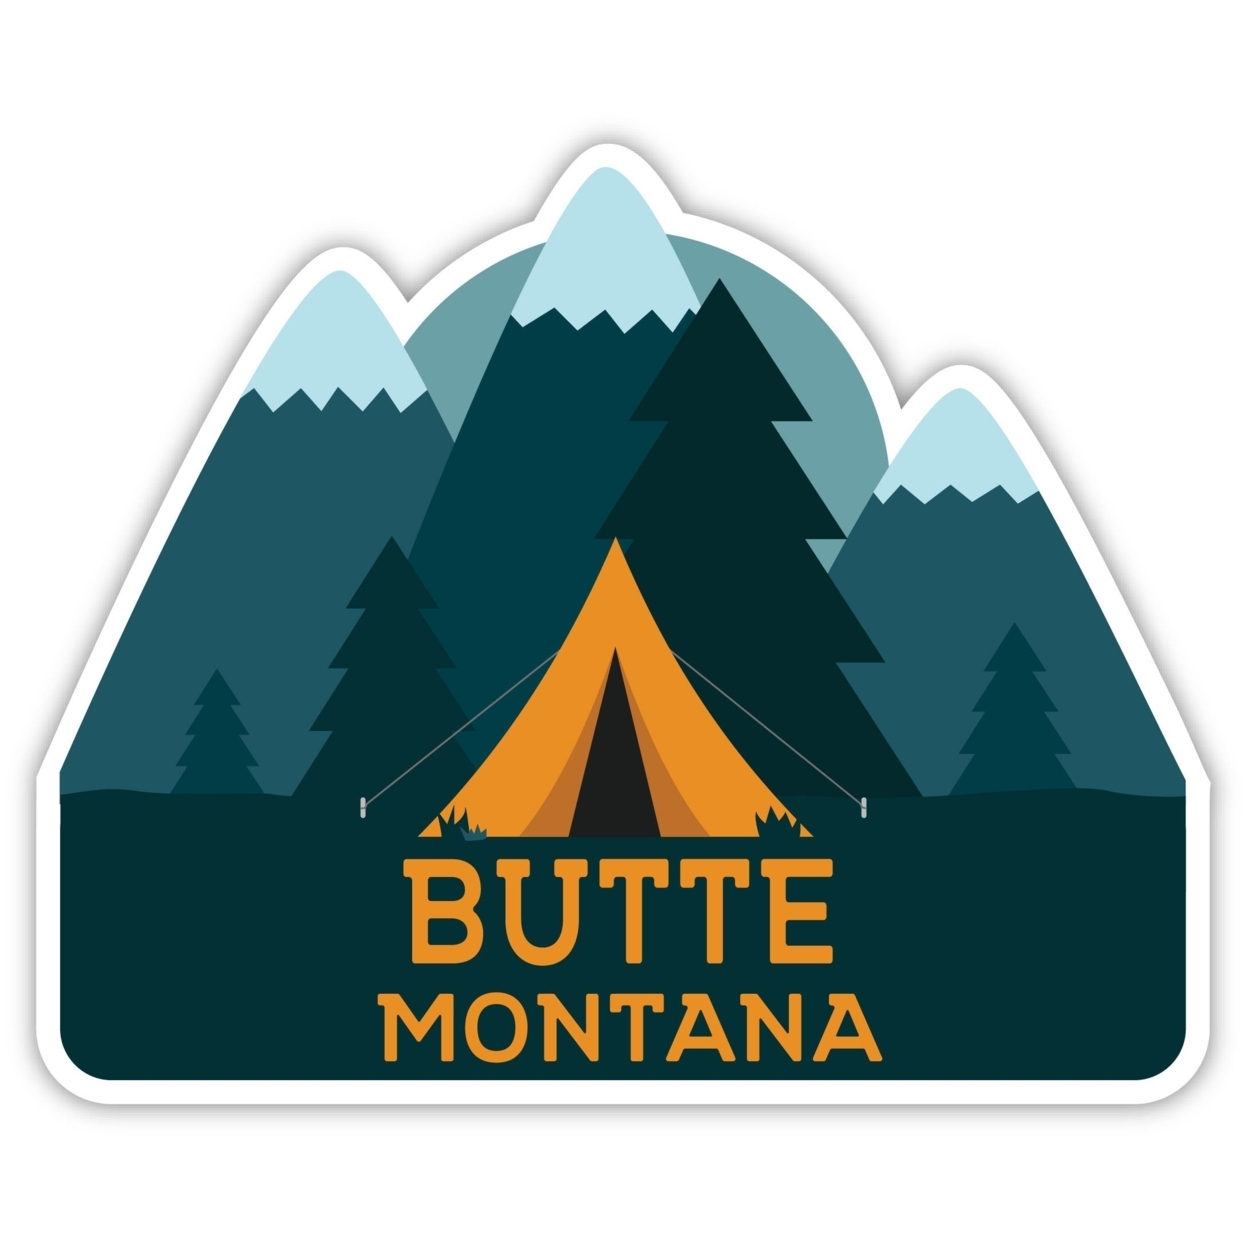 Butte Montana Souvenir Decorative Stickers (Choose Theme And Size) - Single Unit, 8-Inch, Tent